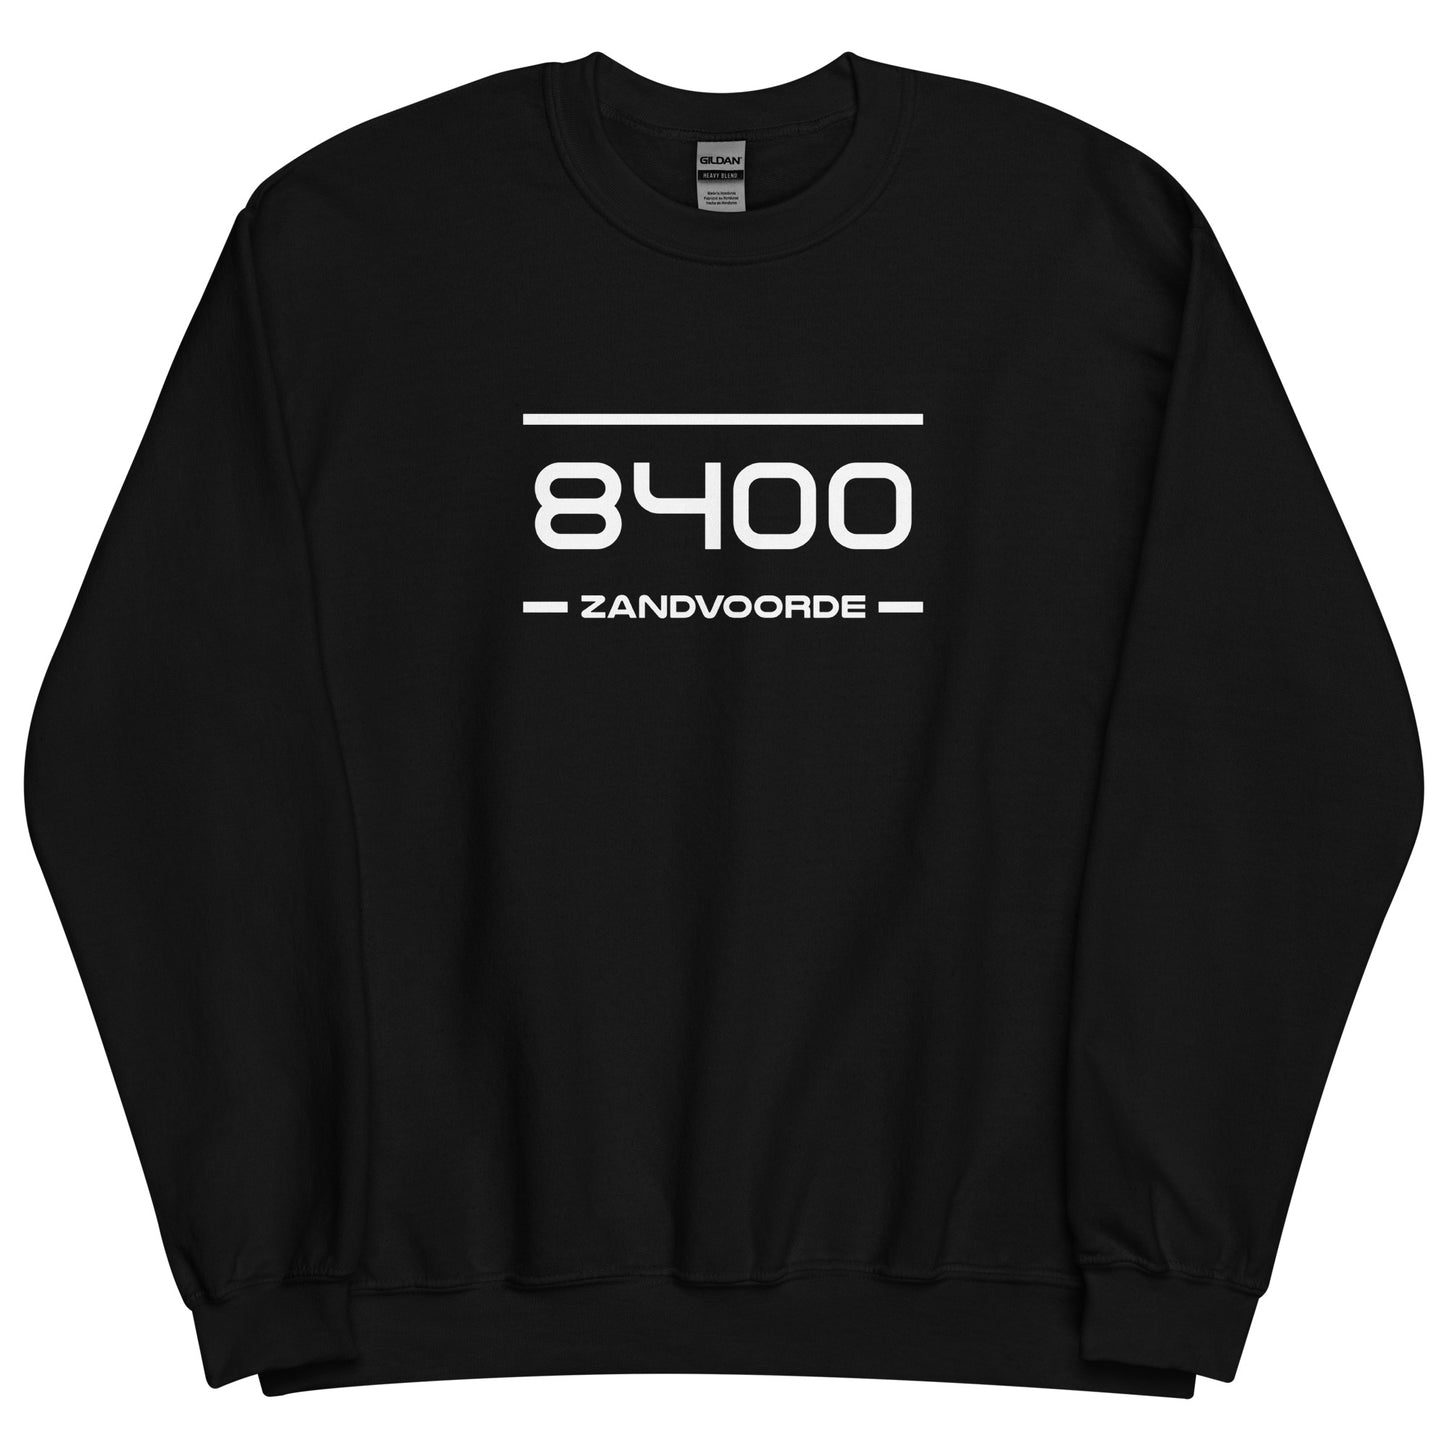 Sweater - 8400 - Zandvoorde (M/V)